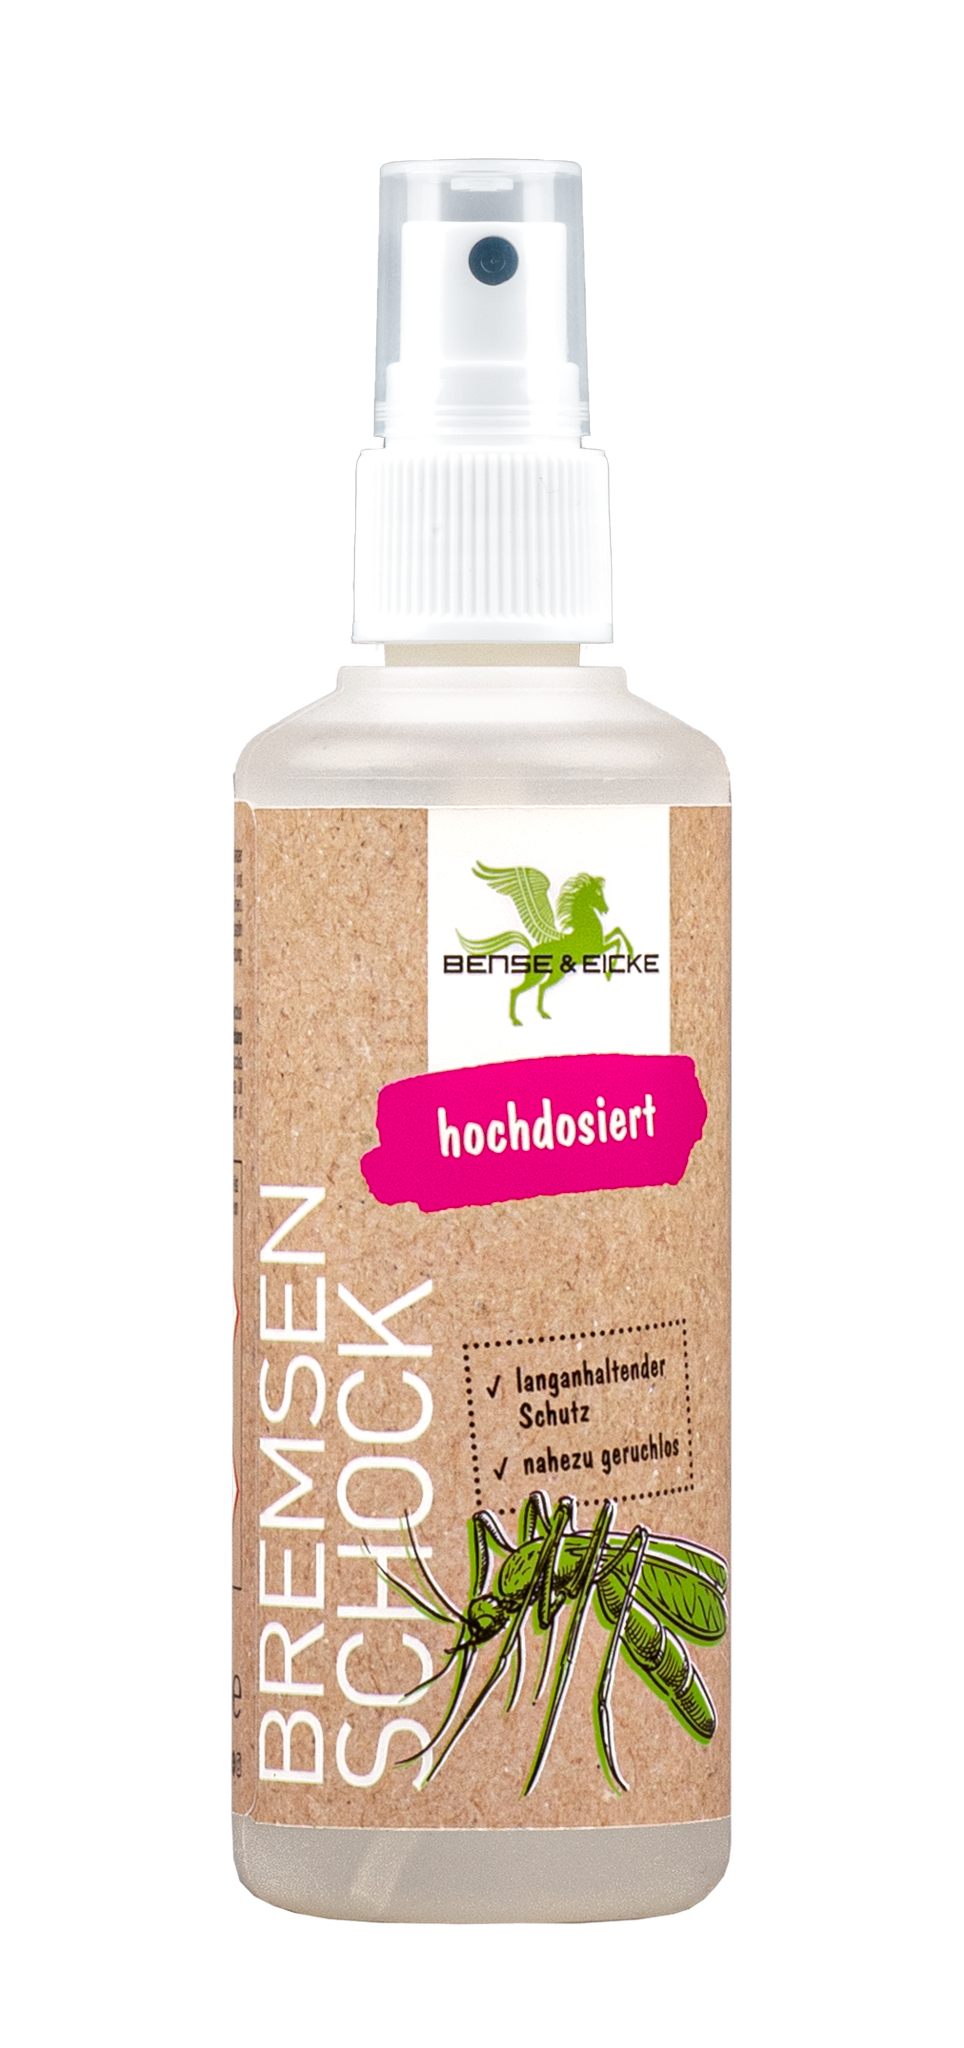 Bense & Eicke | BremsenSchock - Nahezu geruchloser Insektenschutz mit 20,6% Icaridin - 2,5 L